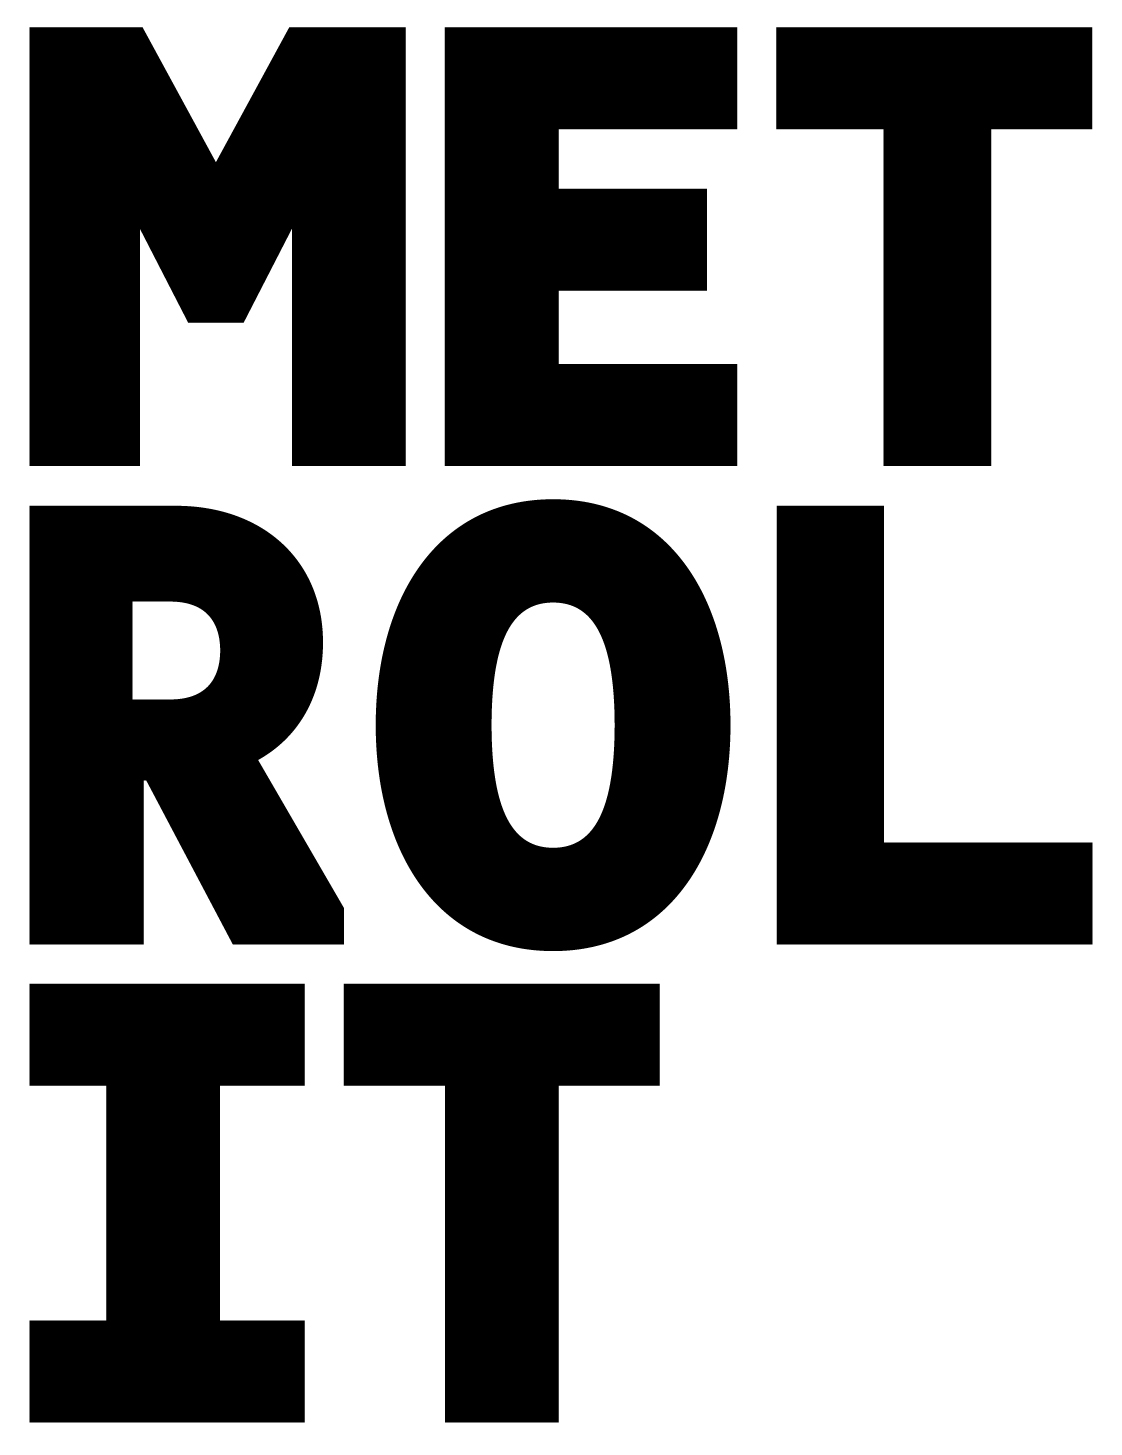 Klasse statt Masse? – Ein Interview mit Metrolit